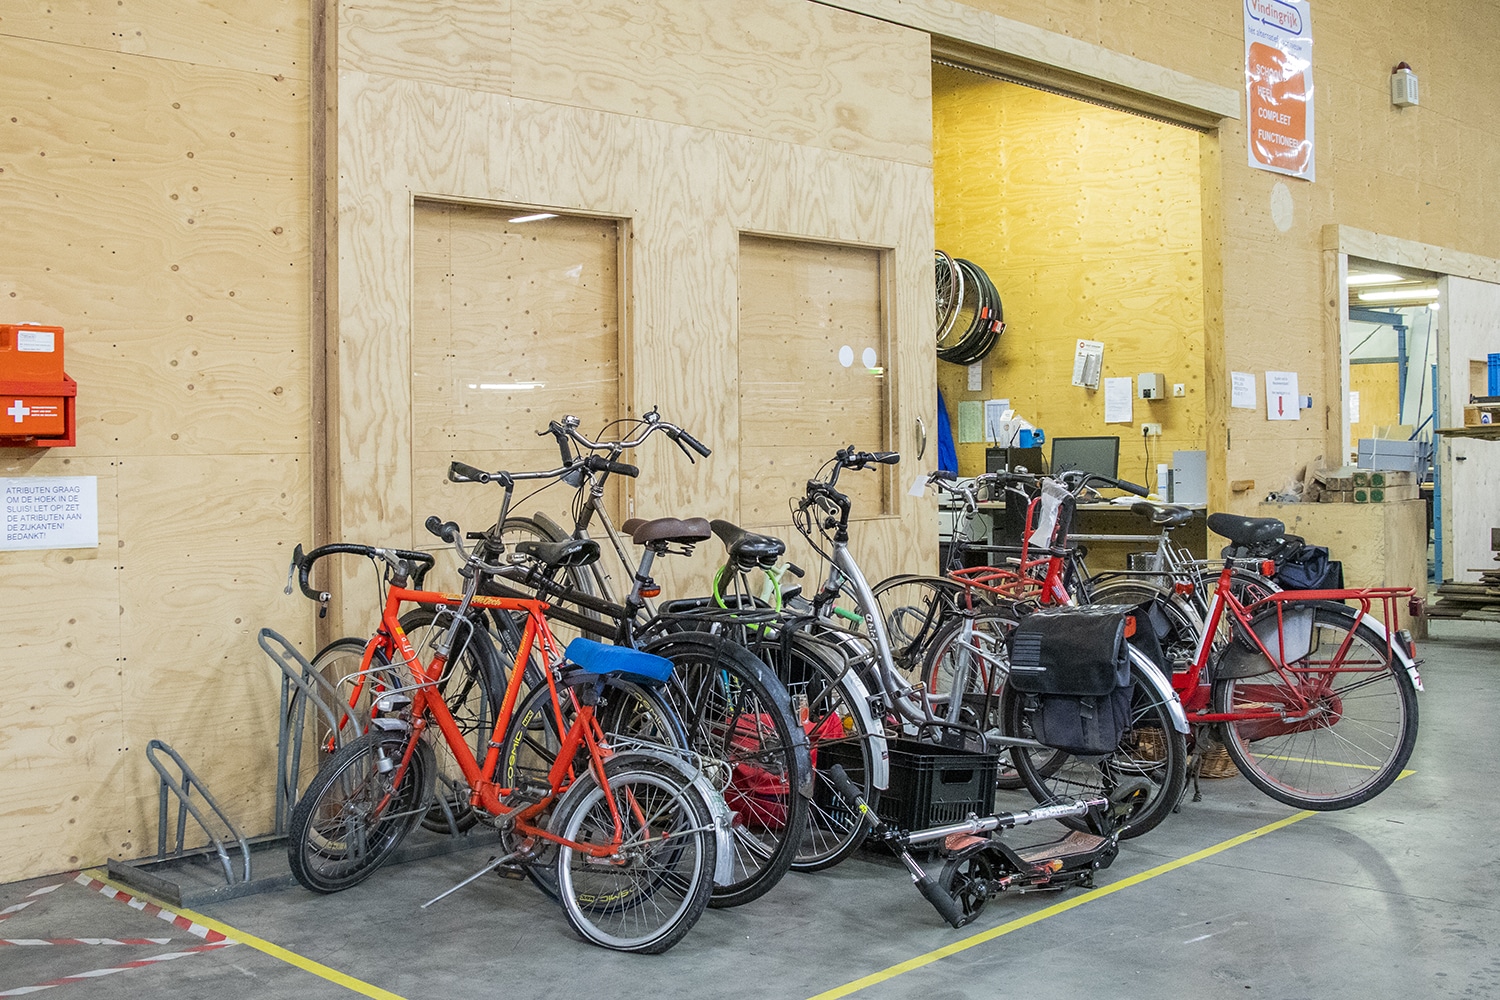 Op de foto zie je een klein aantal fietsen staan die staan te wachten om gerepareerd te worden.